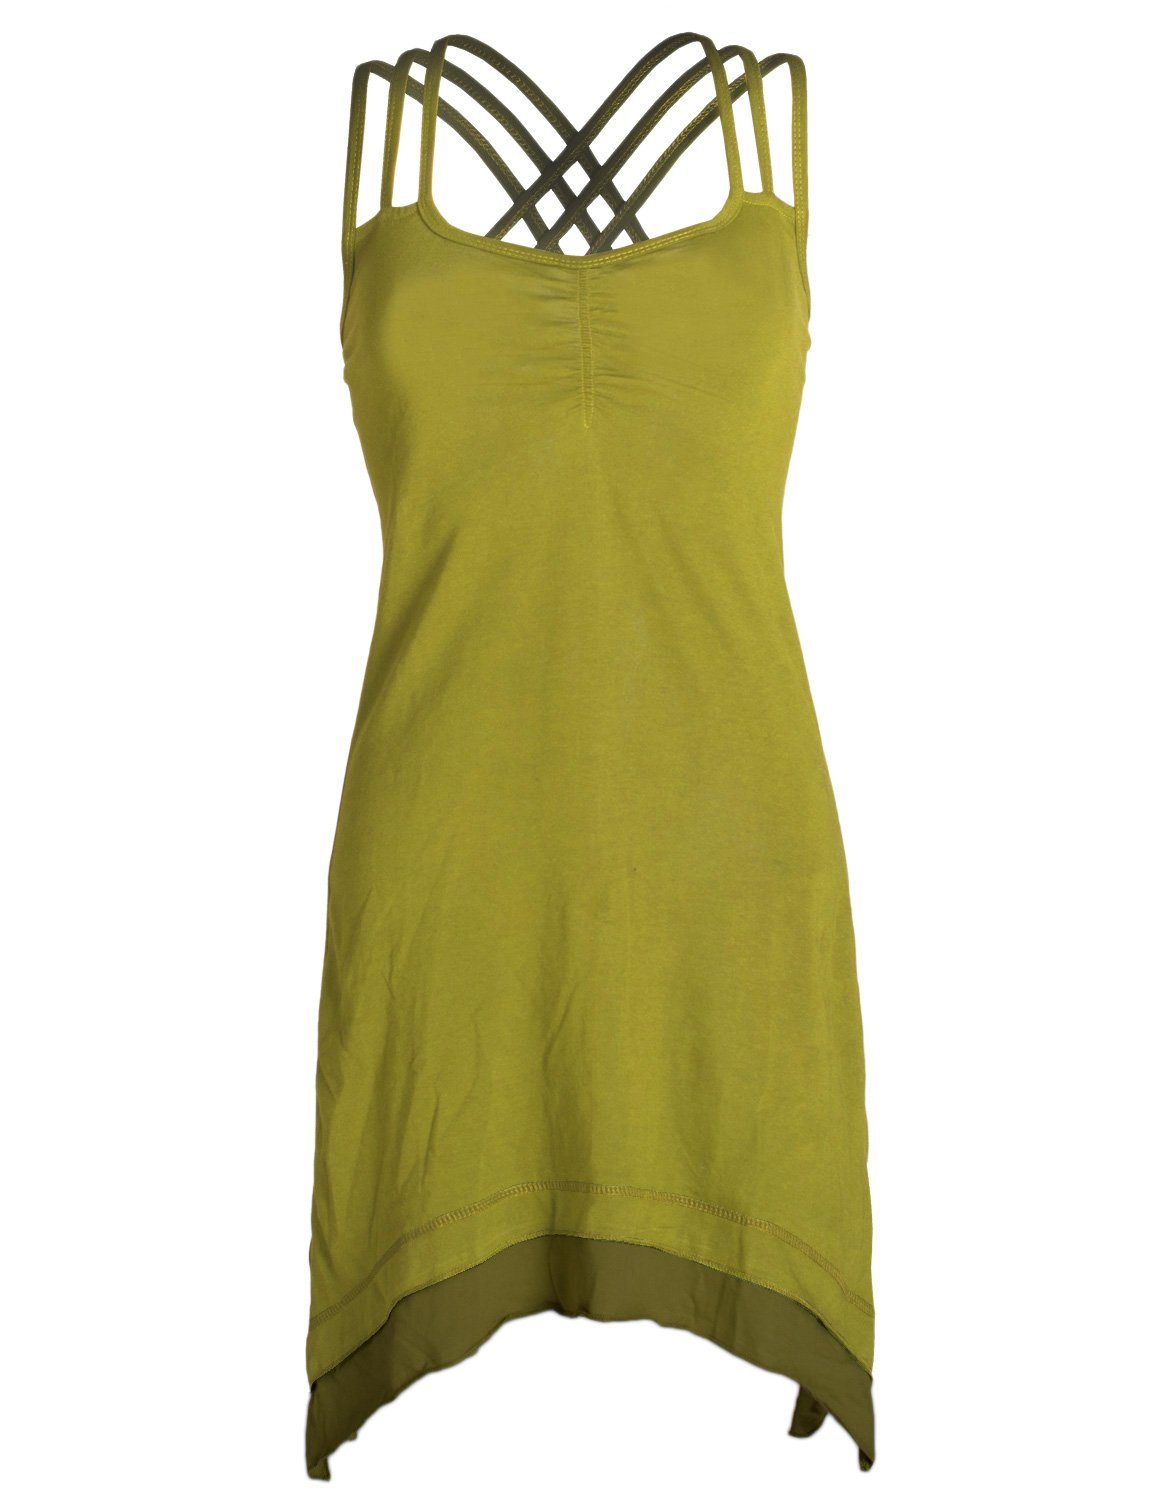 Vishes Sommerkleid Lagenlook Trägerkleid Organic Cotton mit Zipfeln Elfen, Hippie, Boho Style hellgrün